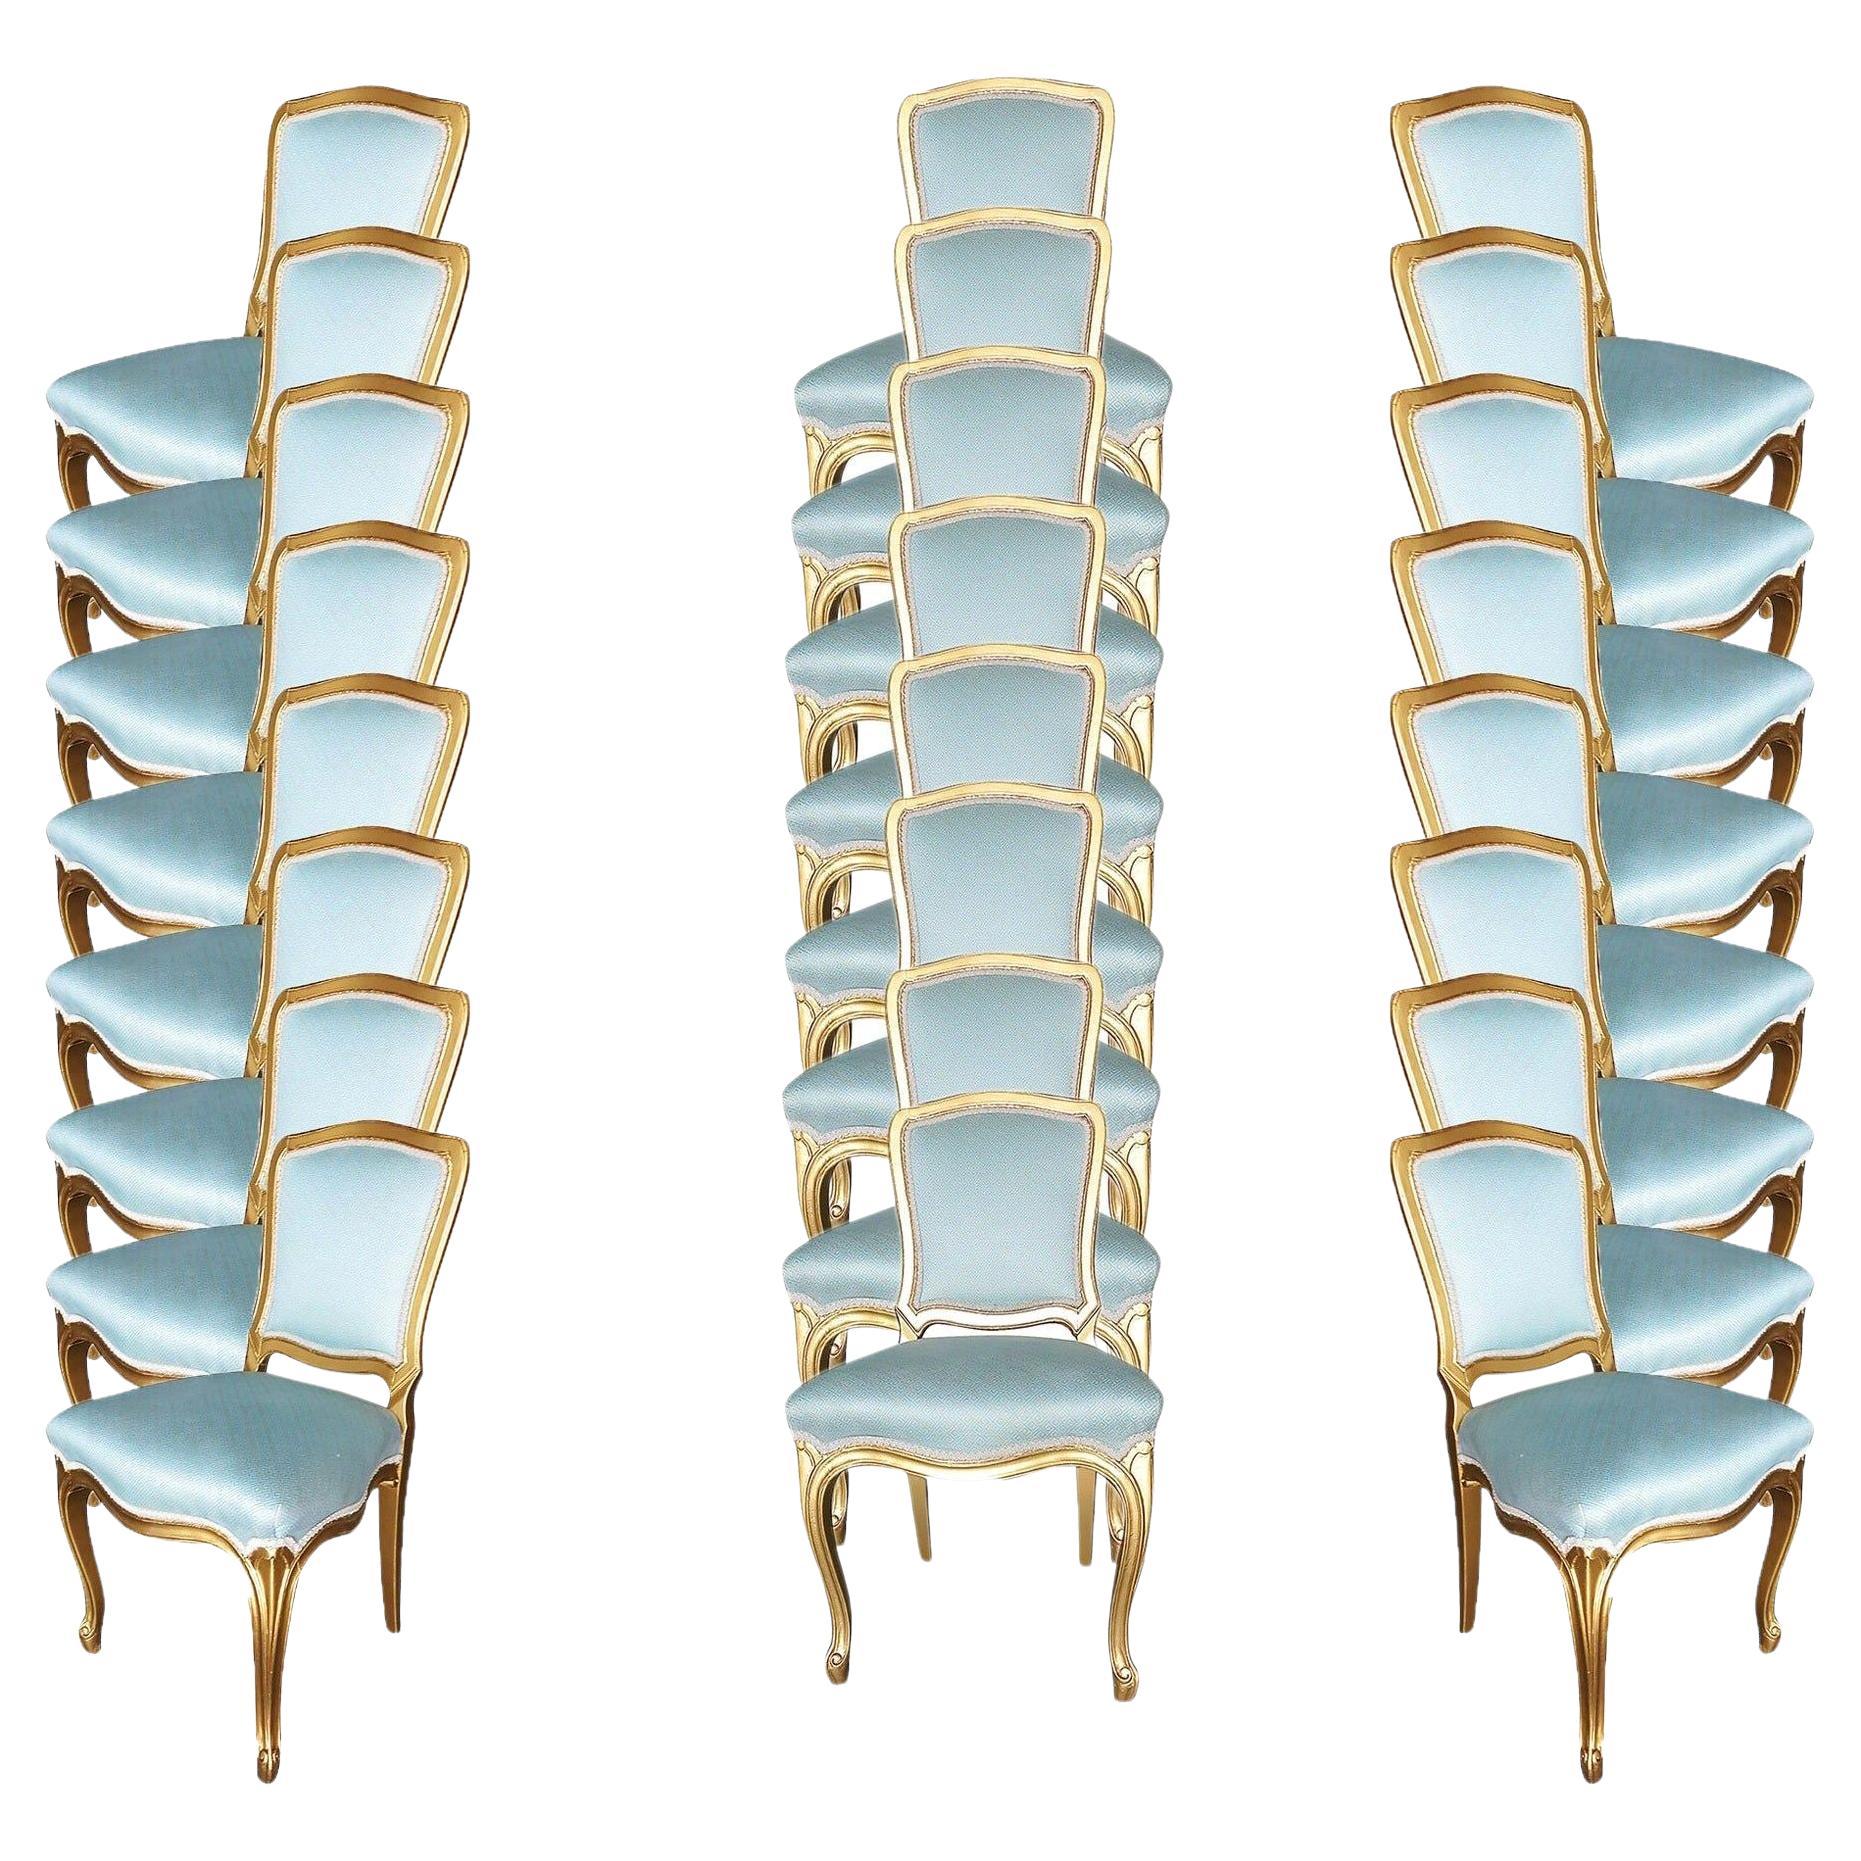 24 chaises de salle à manger de style Louis XVI de style Hollywood Regency, datant d'environ 1950